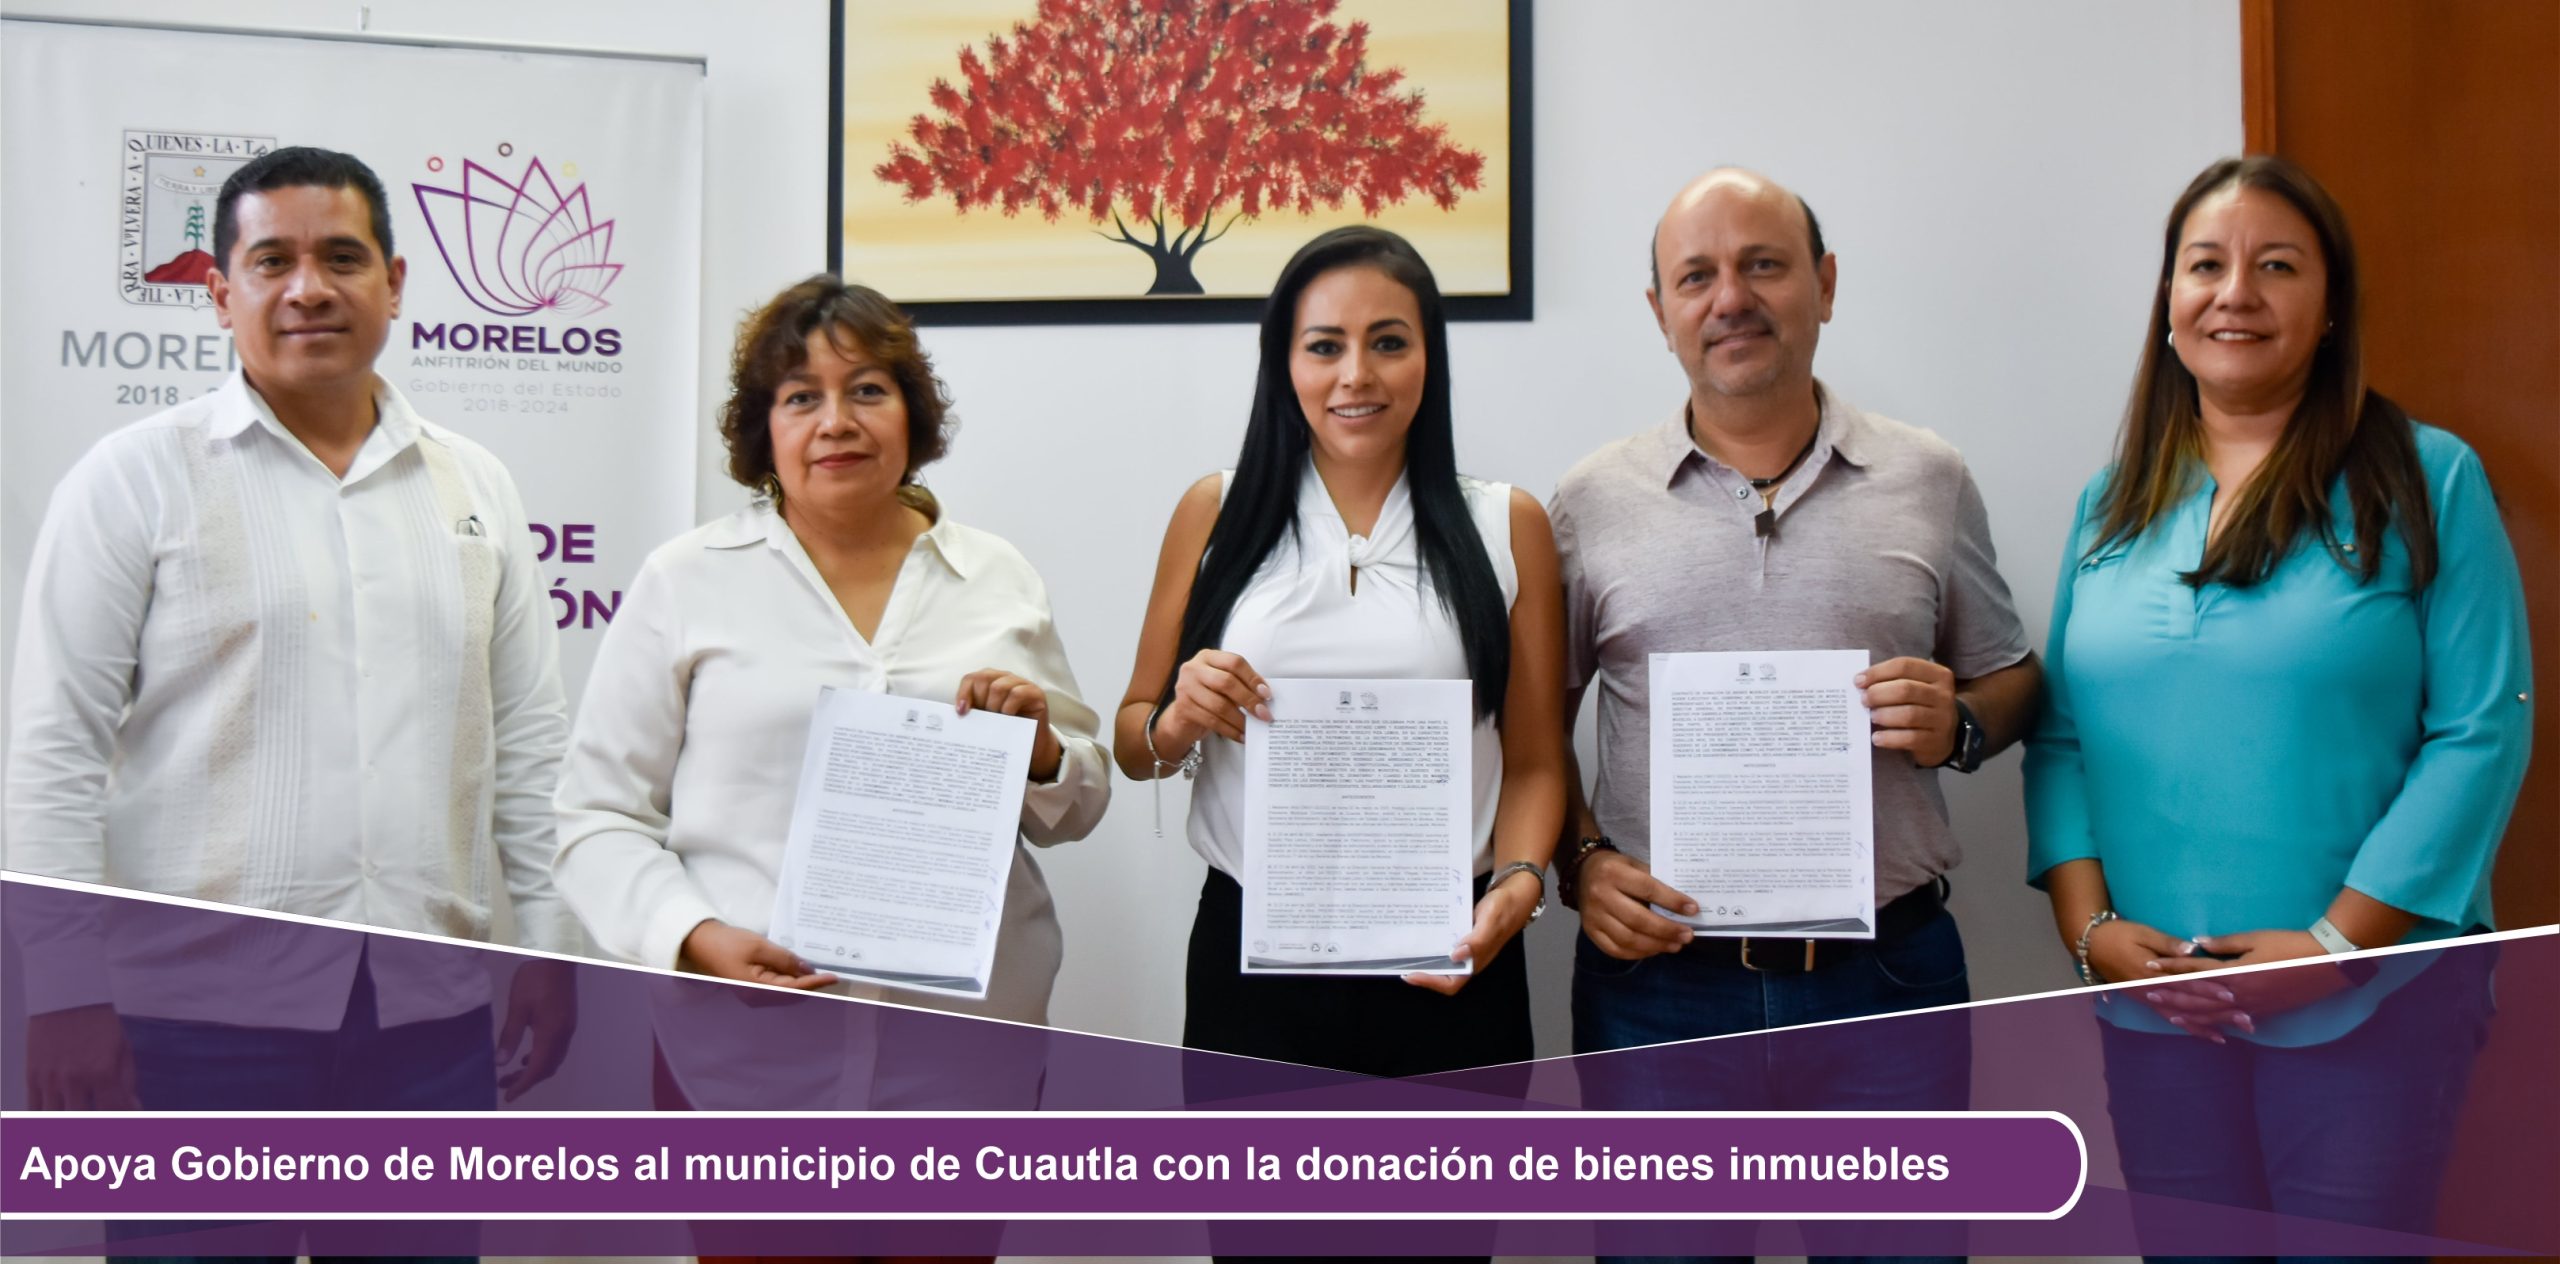 Apoya Gobierno de Morelos al municipio de Cuautla con la donación de bienes inmuebles